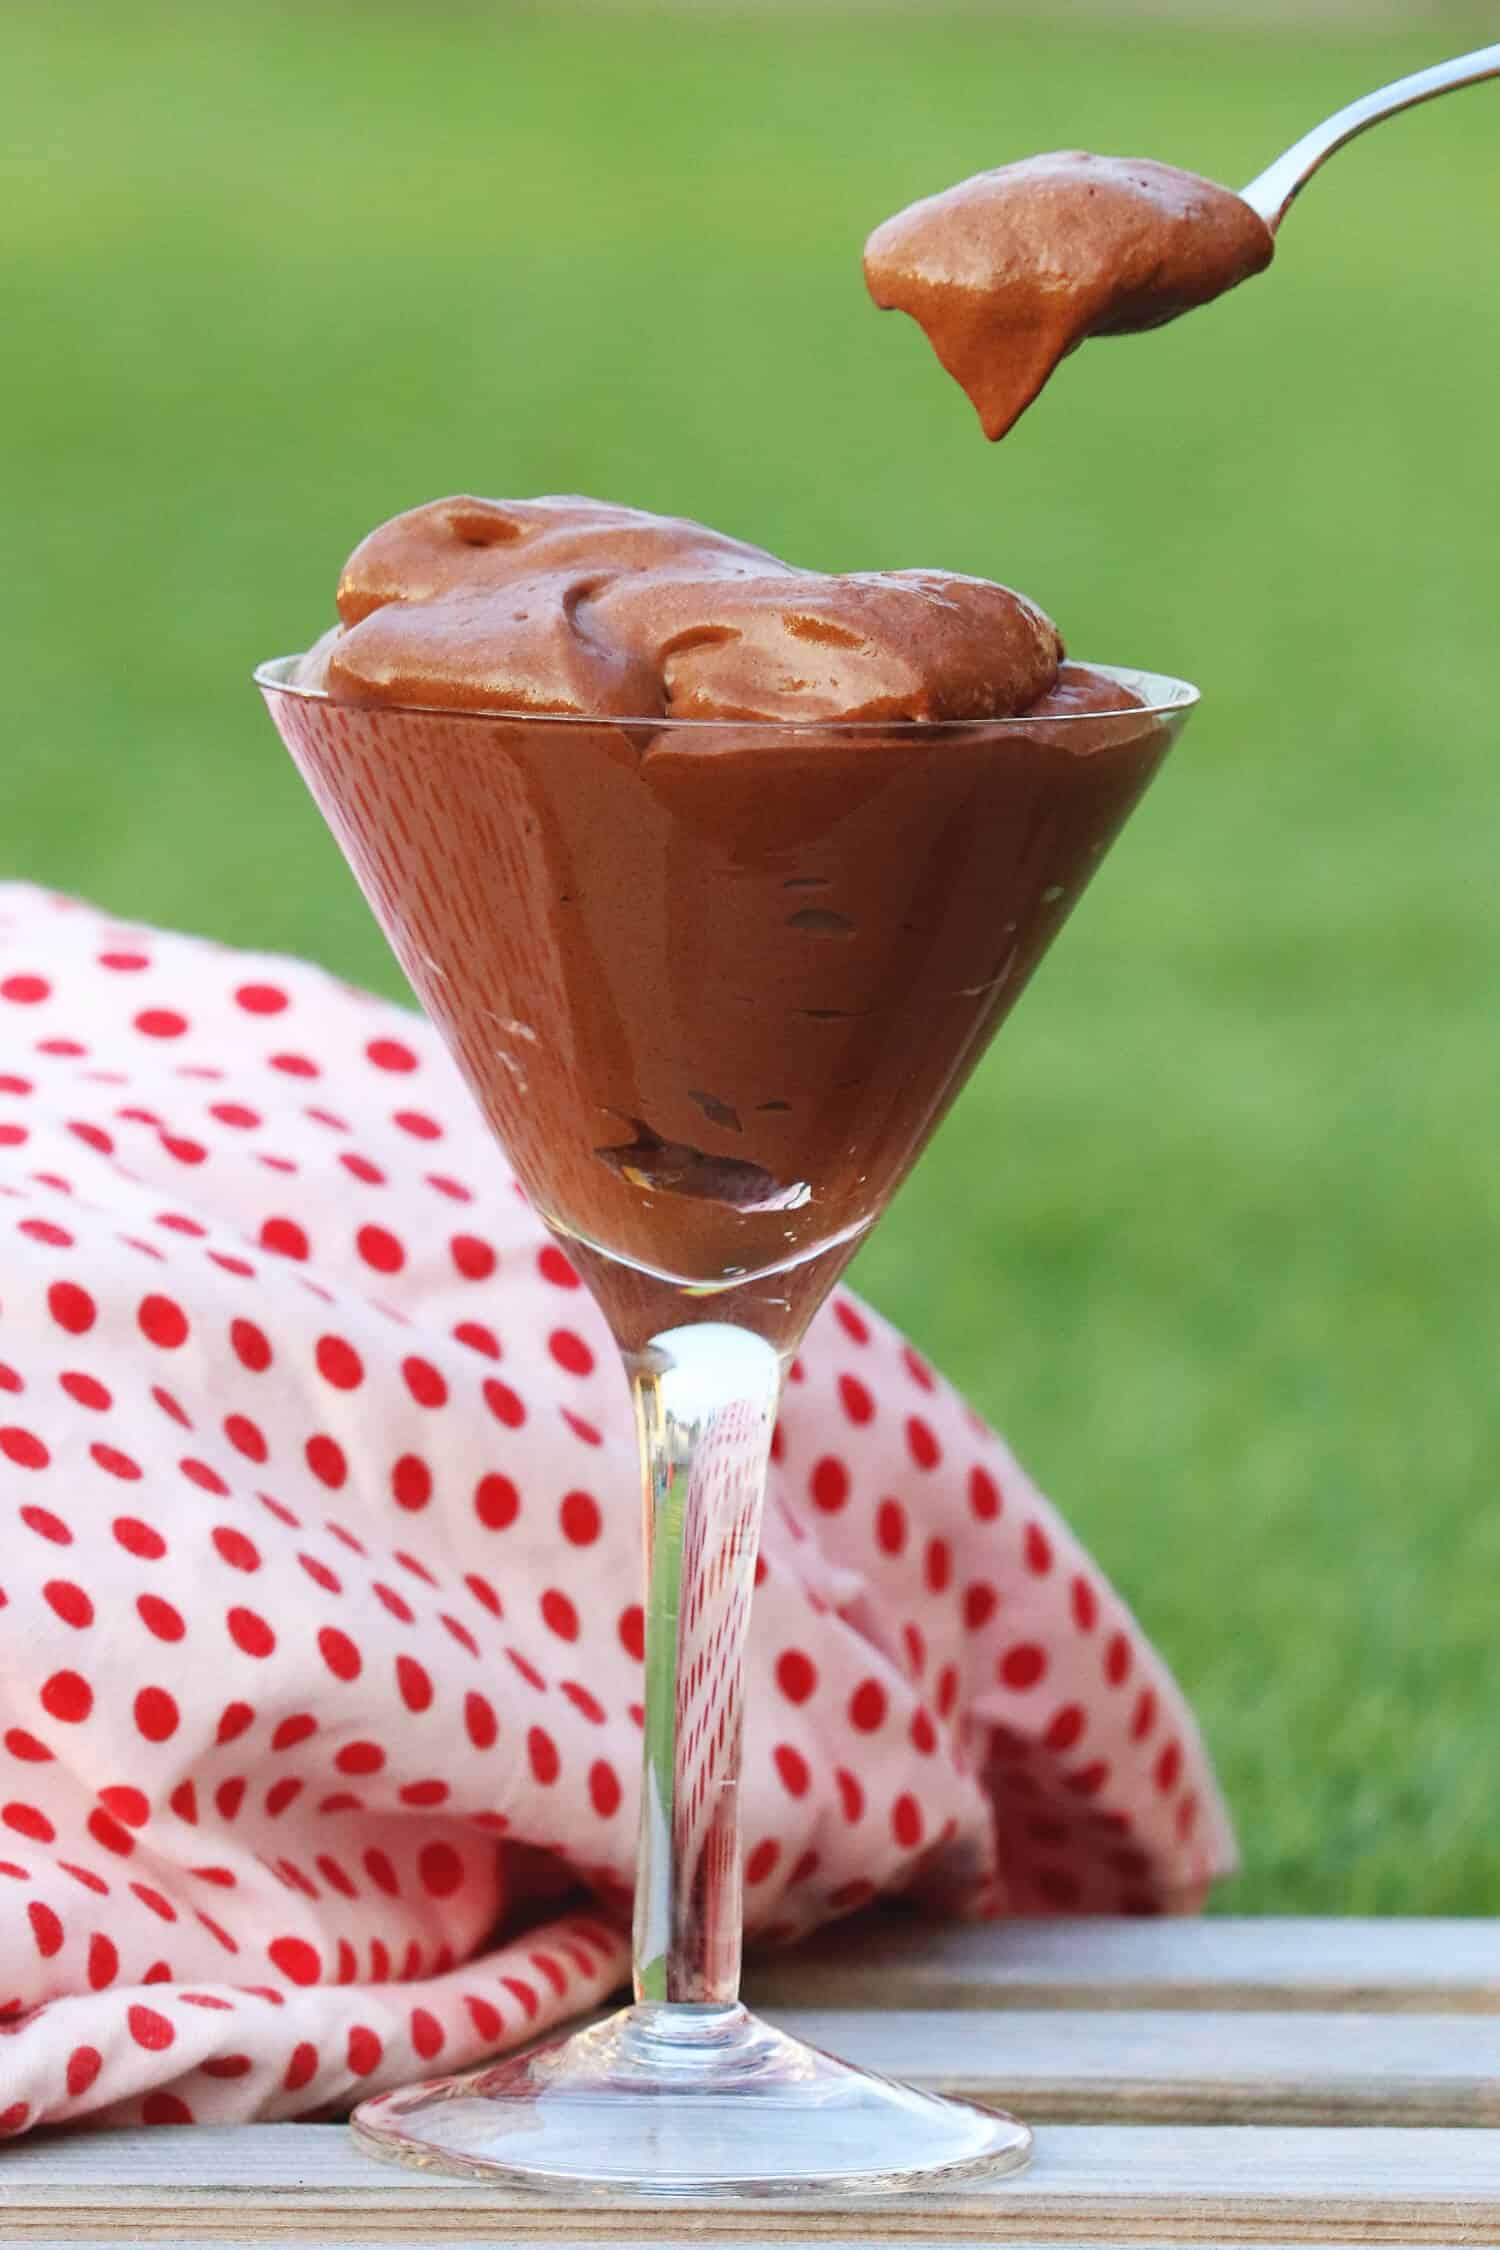 Diese Low Carb Mousse au Chocolat ist ein wahrgewordener Traum aus Schokolade: Super cremig, super locker und super schokoladig!